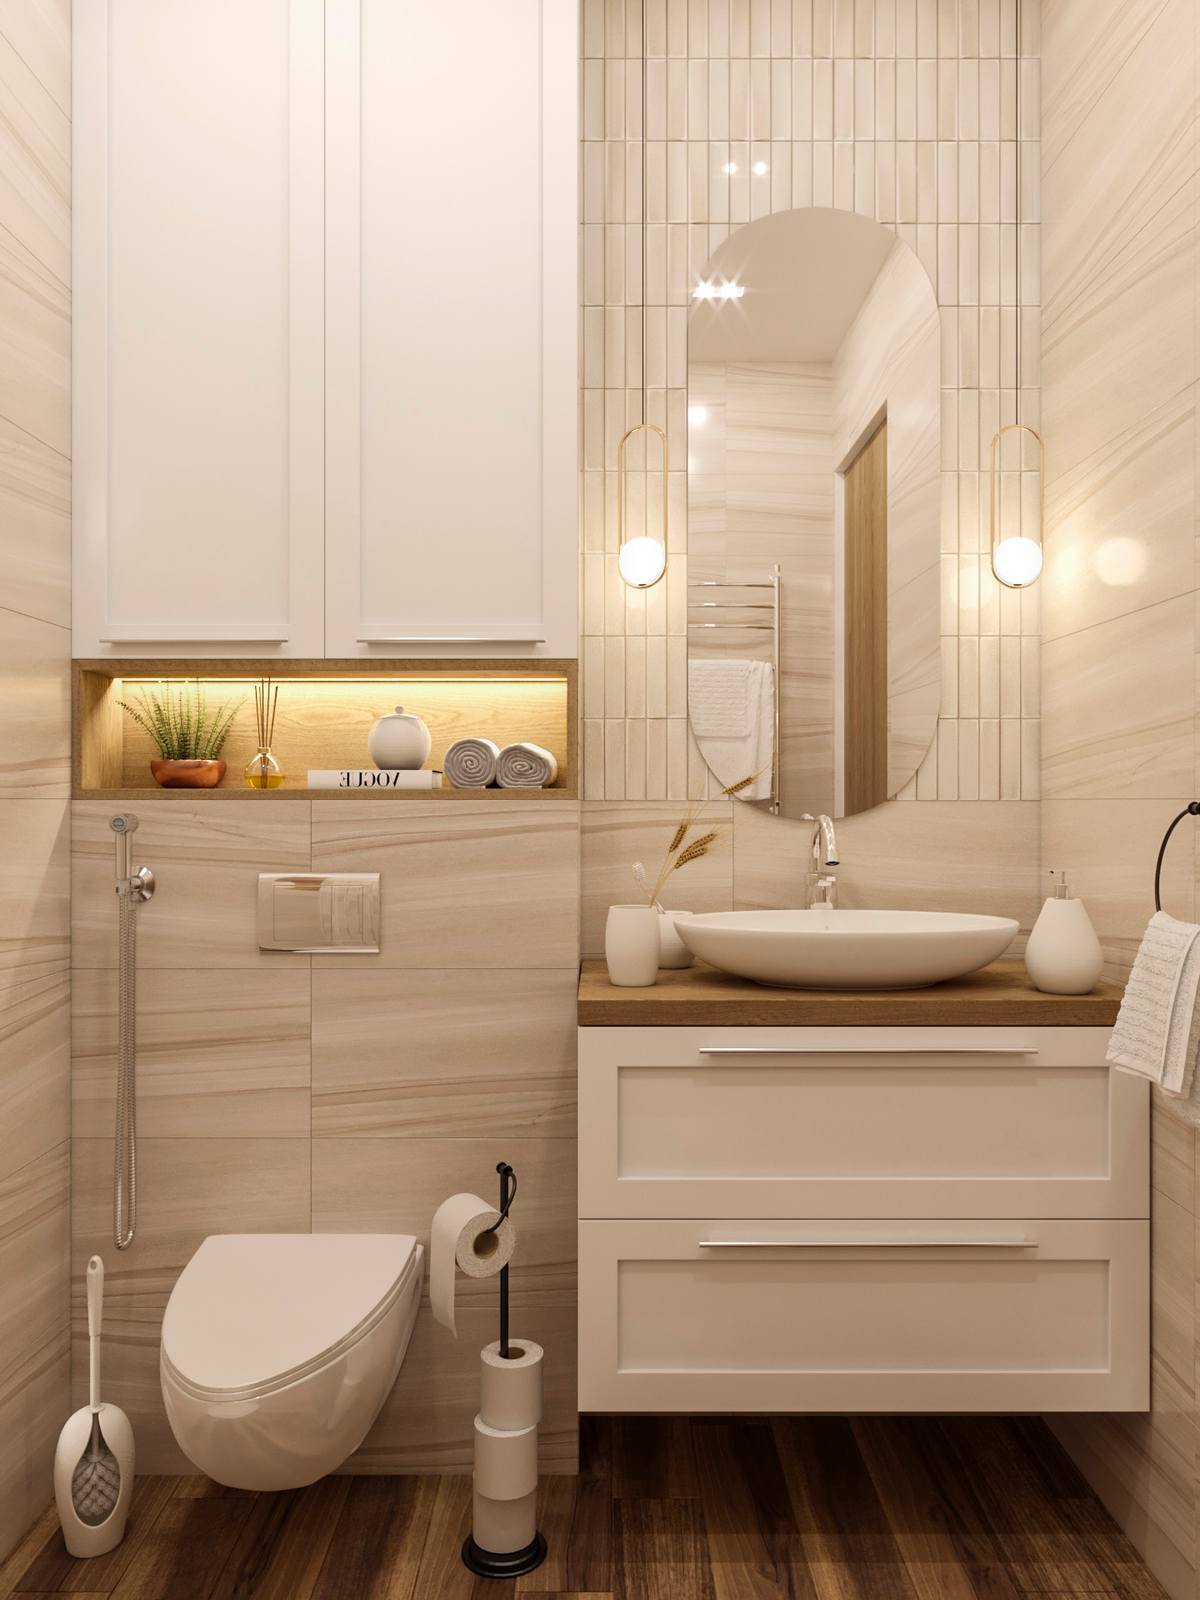 Căn hộ thiết kế một phòng tắm chung với gam màu be nhạt kết hợp trắng cùng hệ thống đèn thả, đèn gầm có ánh sáng vàng để tạo cảm giác ấm áp. Tủ lưu trữ kết hợp bồn rửa và toilet đều có thiết kế gắn tường để giải phóng mặt sàn.